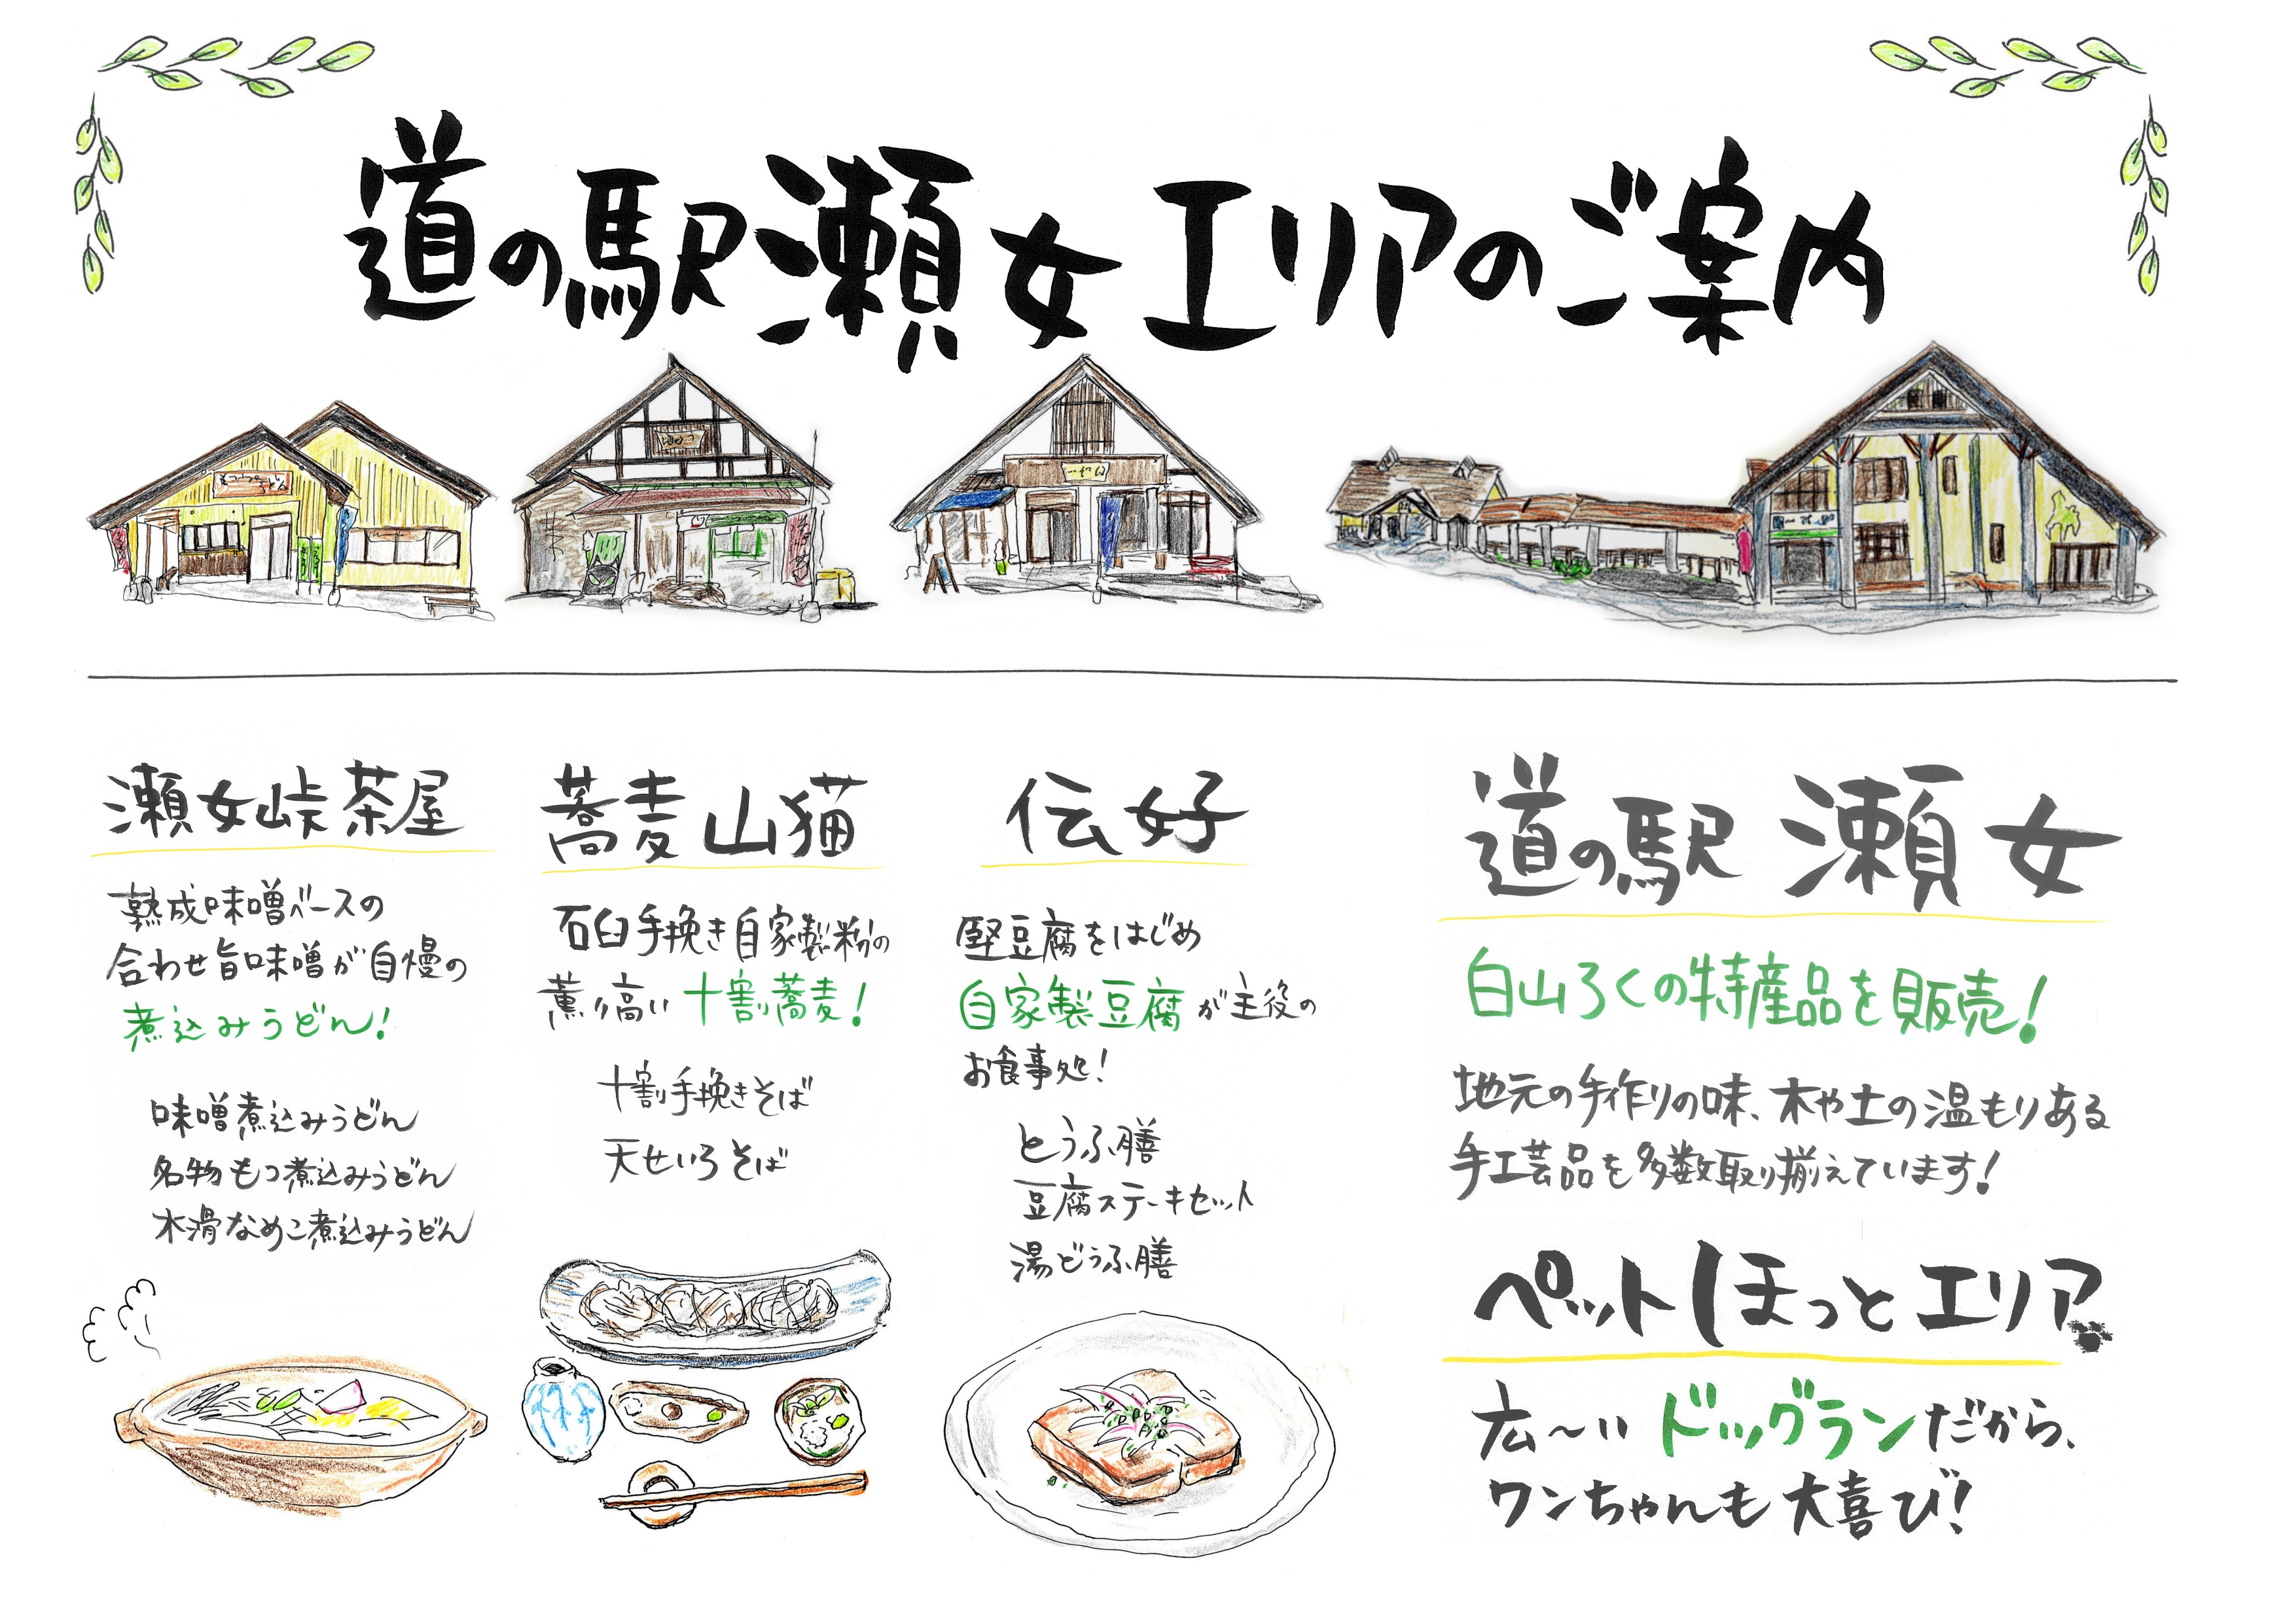 食事イラストつき道の駅エリアマップ (2)